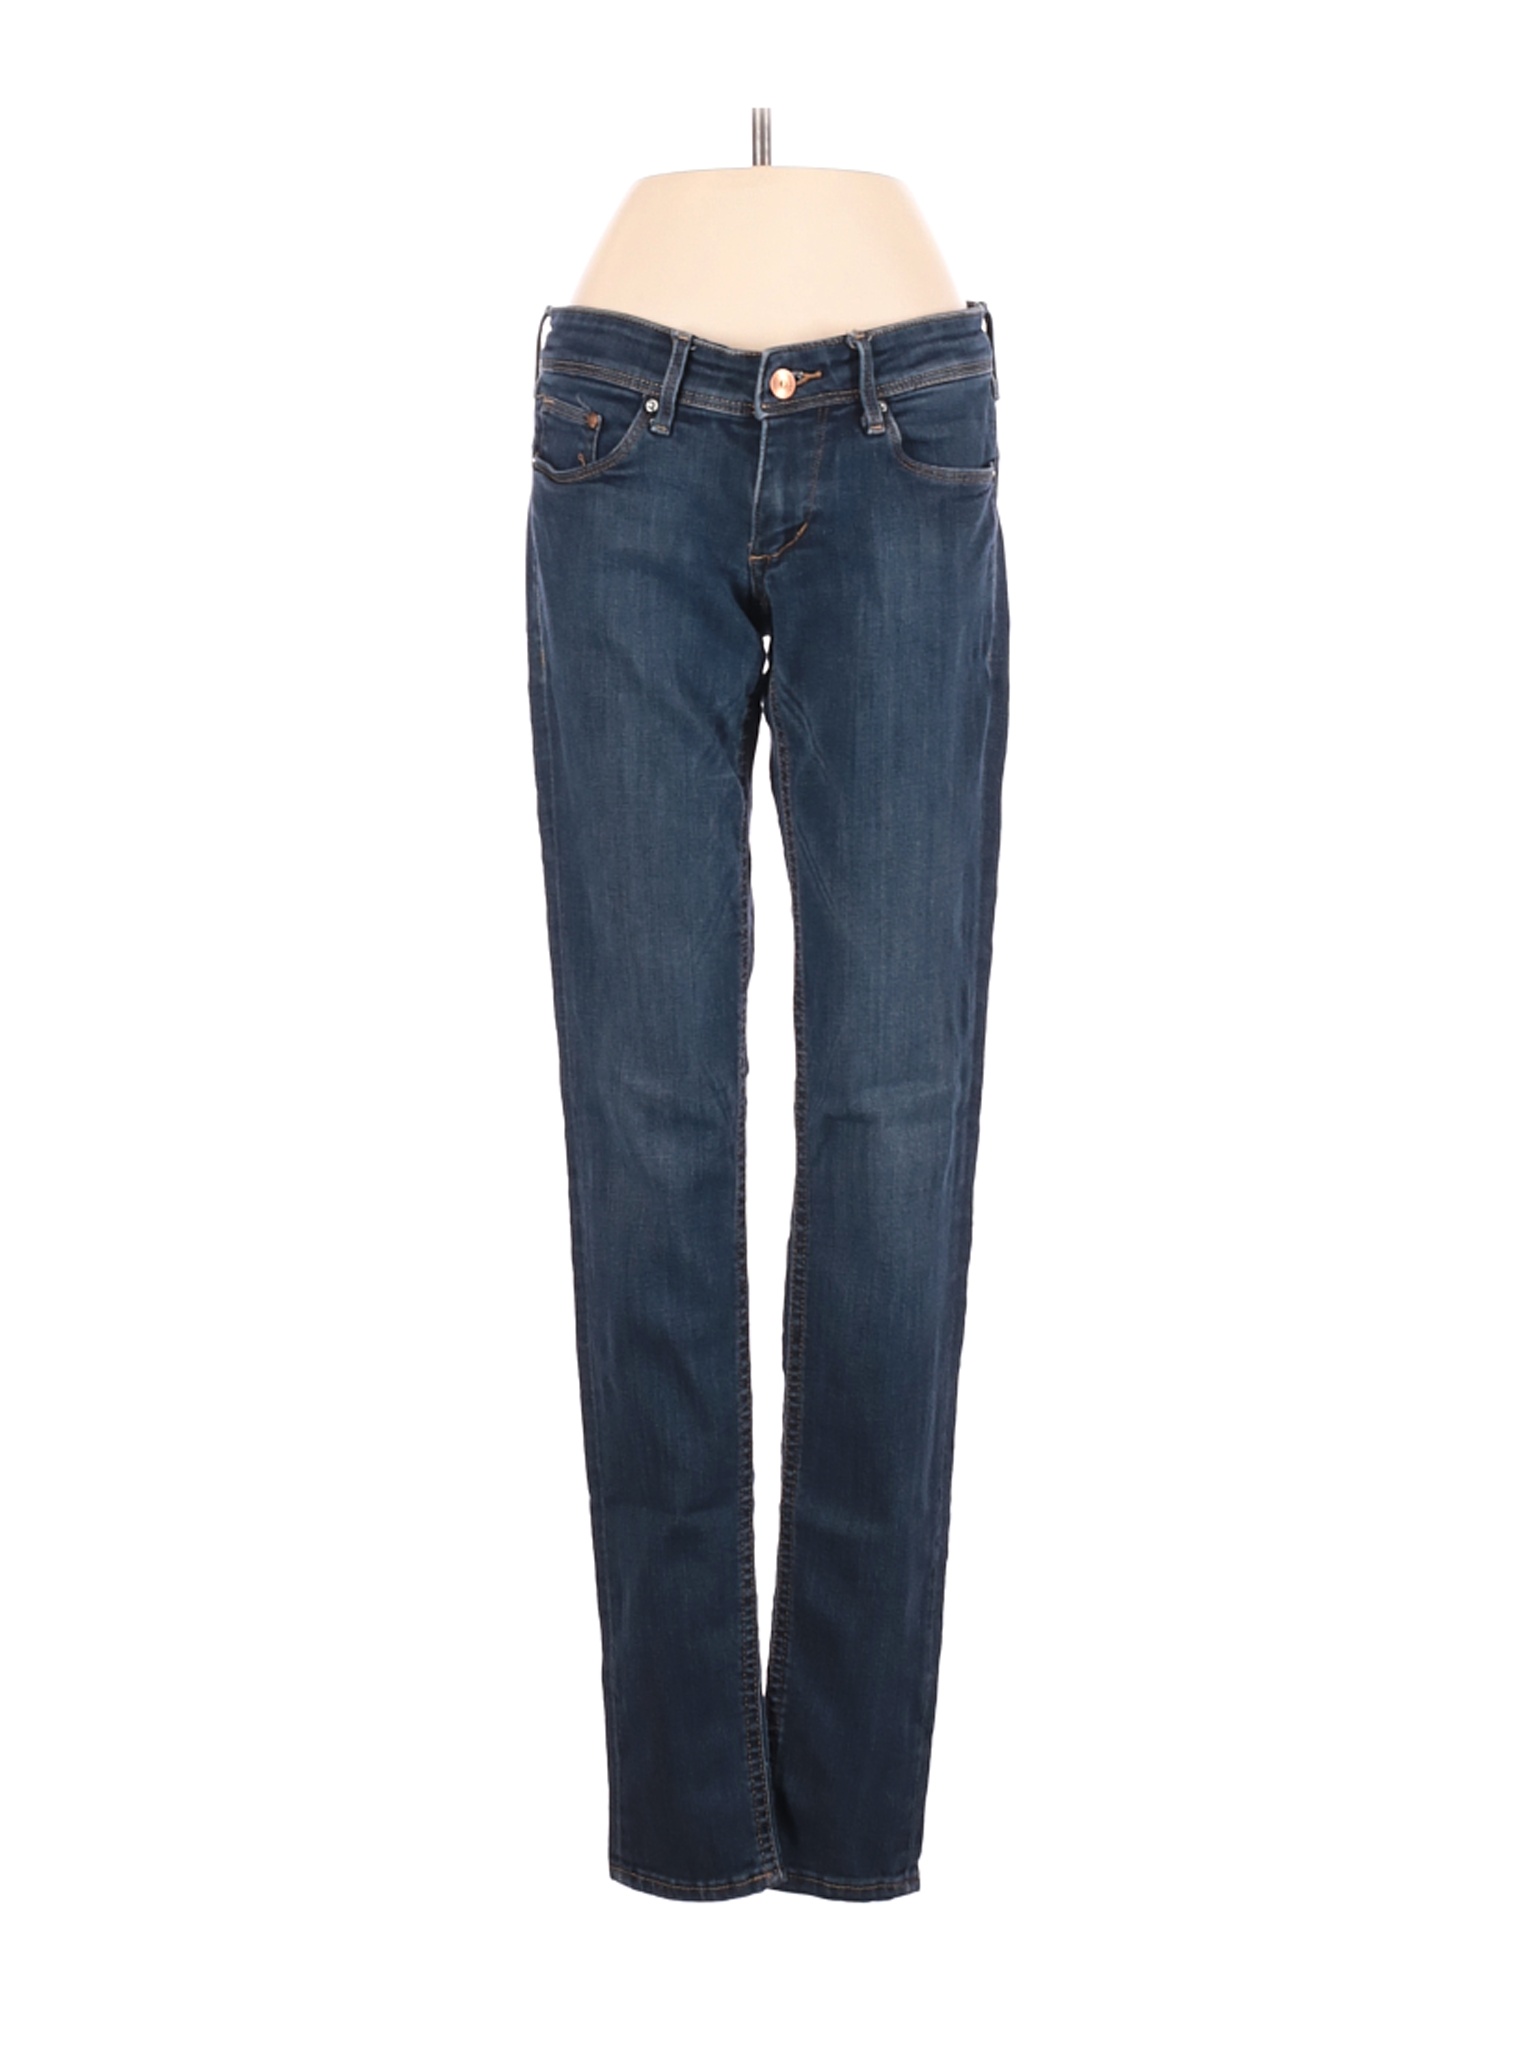 &Denim by H&M Women Blue Jeans 34W | eBay